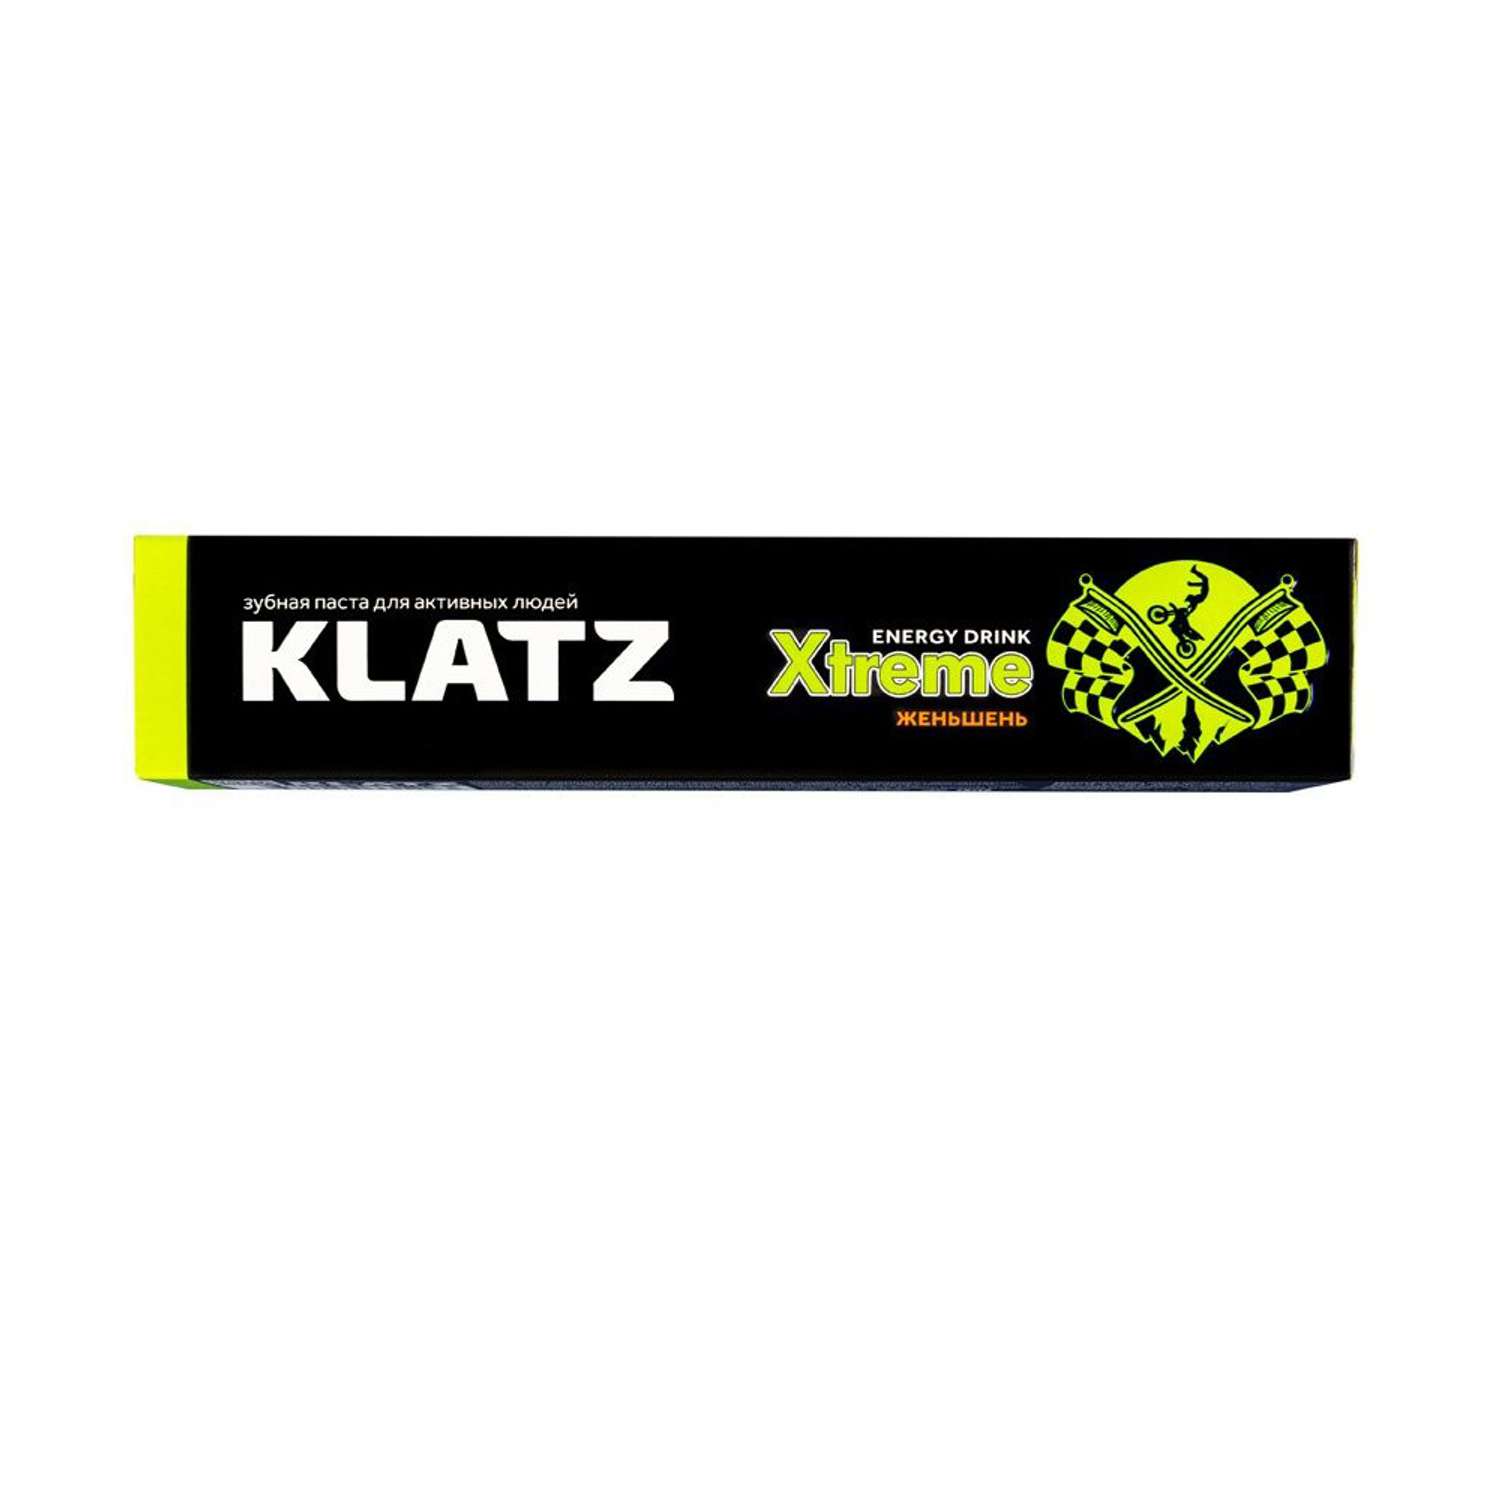 Зубная паста KLATZ для активных людей X-treme Energy drink Женьшень 75мл - фото 4